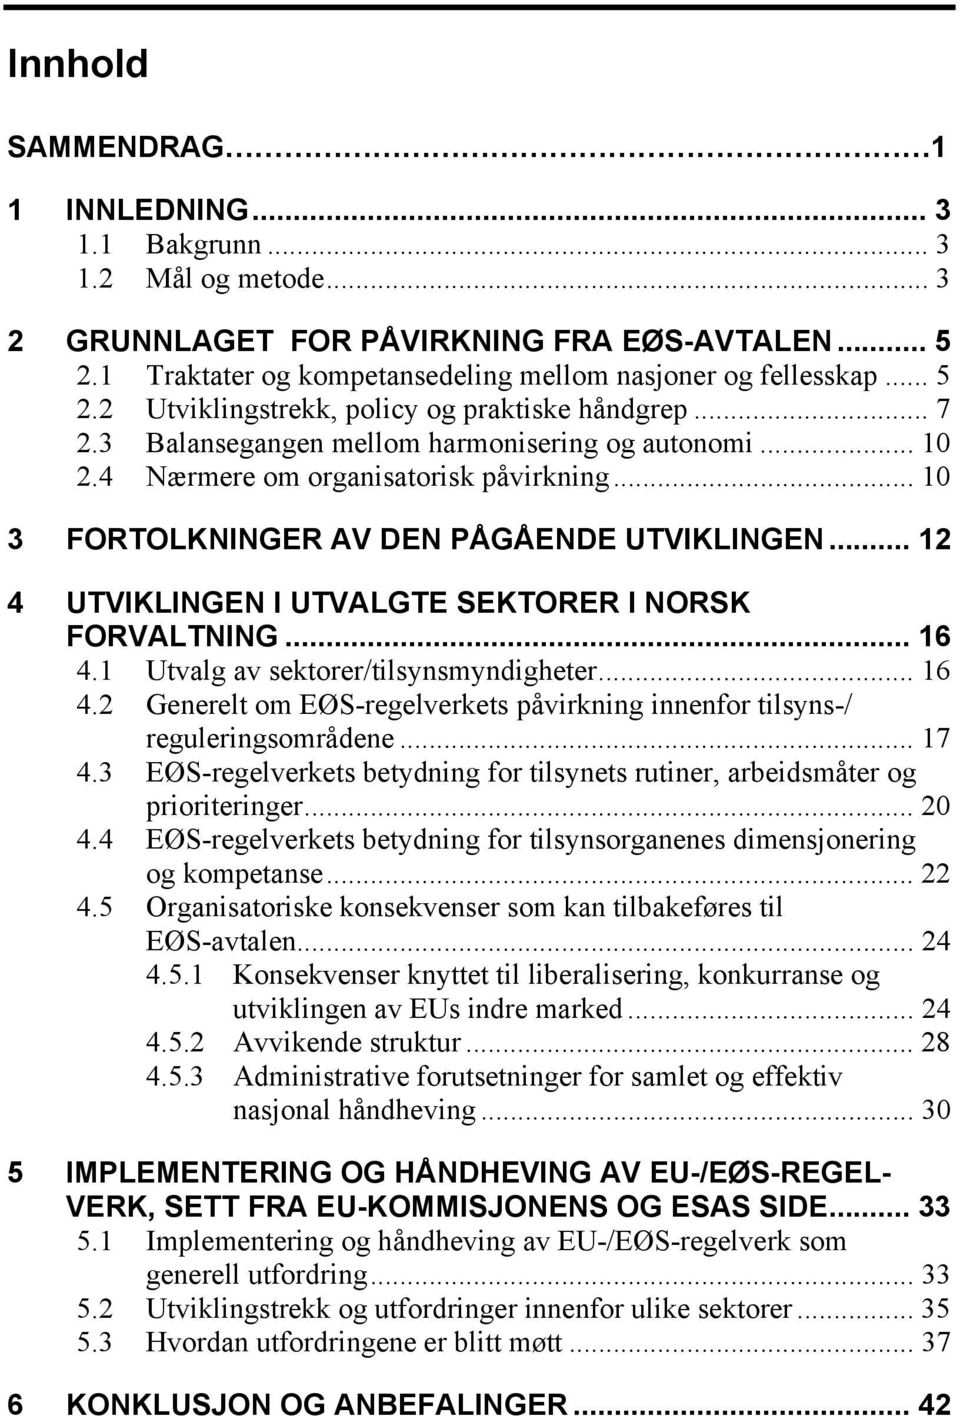 .. 12 4 UTVIKLINGEN I UTVALGTE SEKTORER I NORSK FORVALTNING... 16 4.1 Utvalg av sektorer/tilsynsmyndigheter... 16 4.2 Generelt om EØS-regelverkets påvirkning innenfor tilsyns-/ reguleringsområdene.